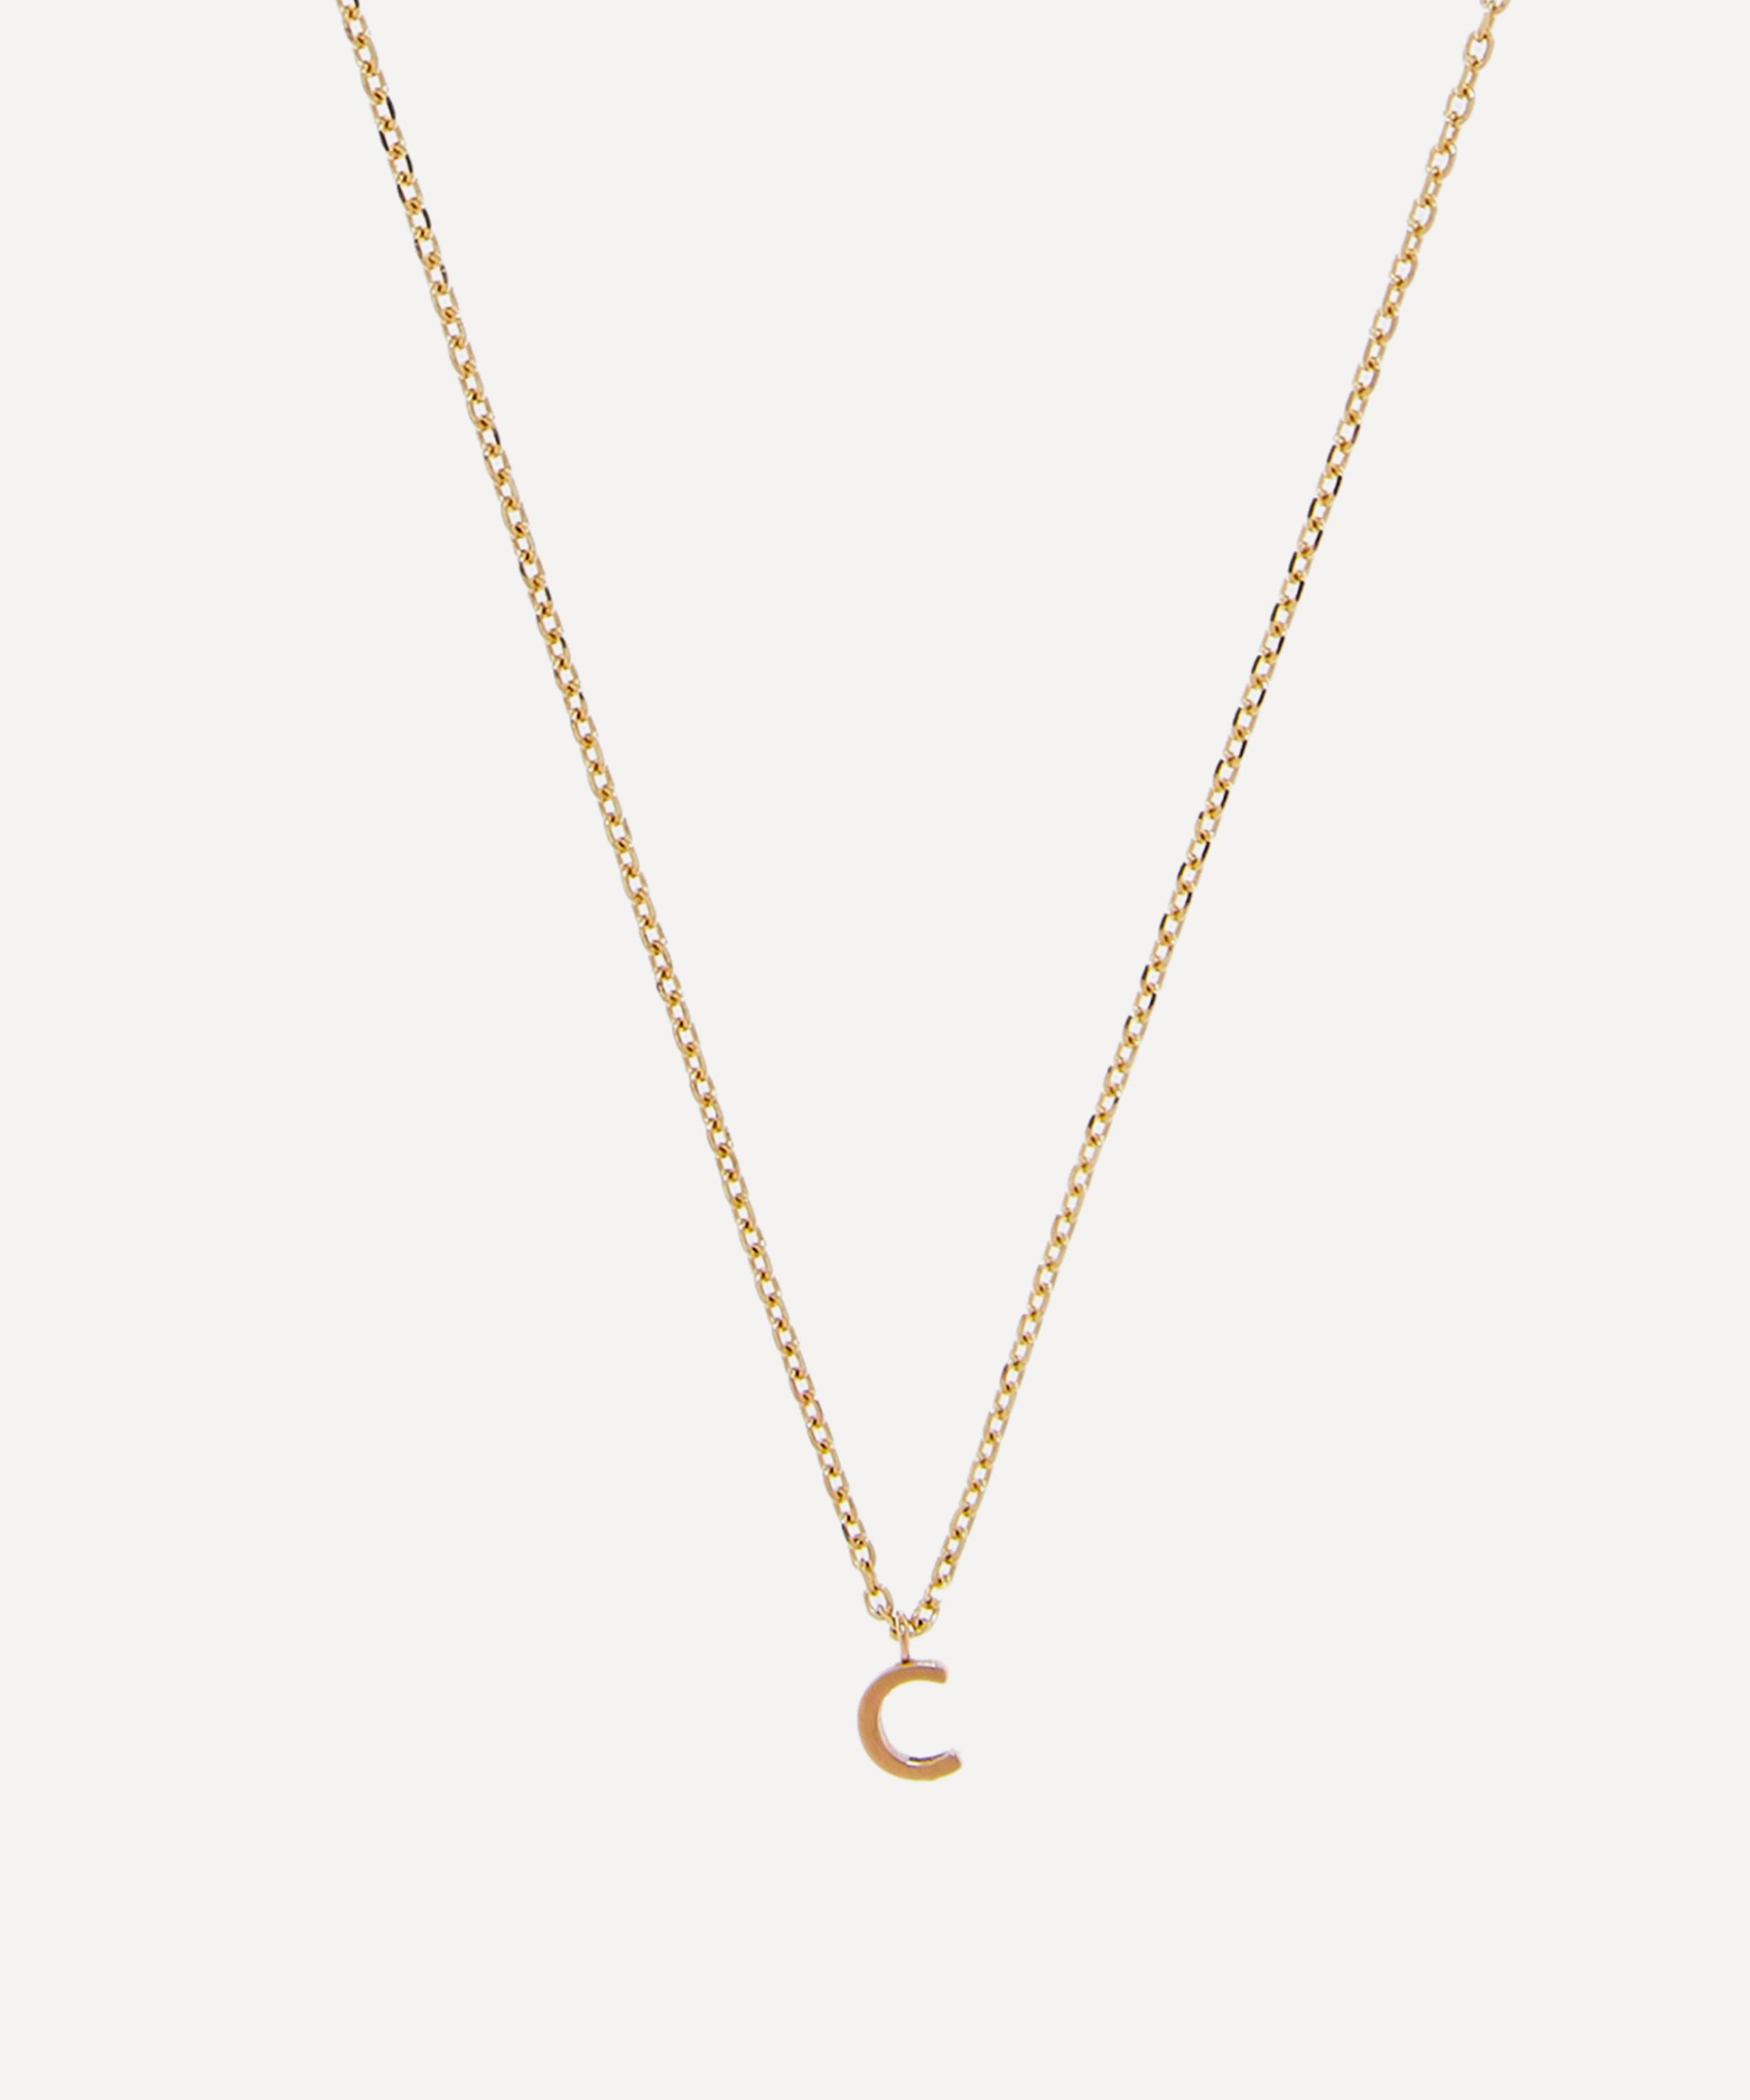 Aurum + Grey 9ct Gold C Initial Pendant Necklace